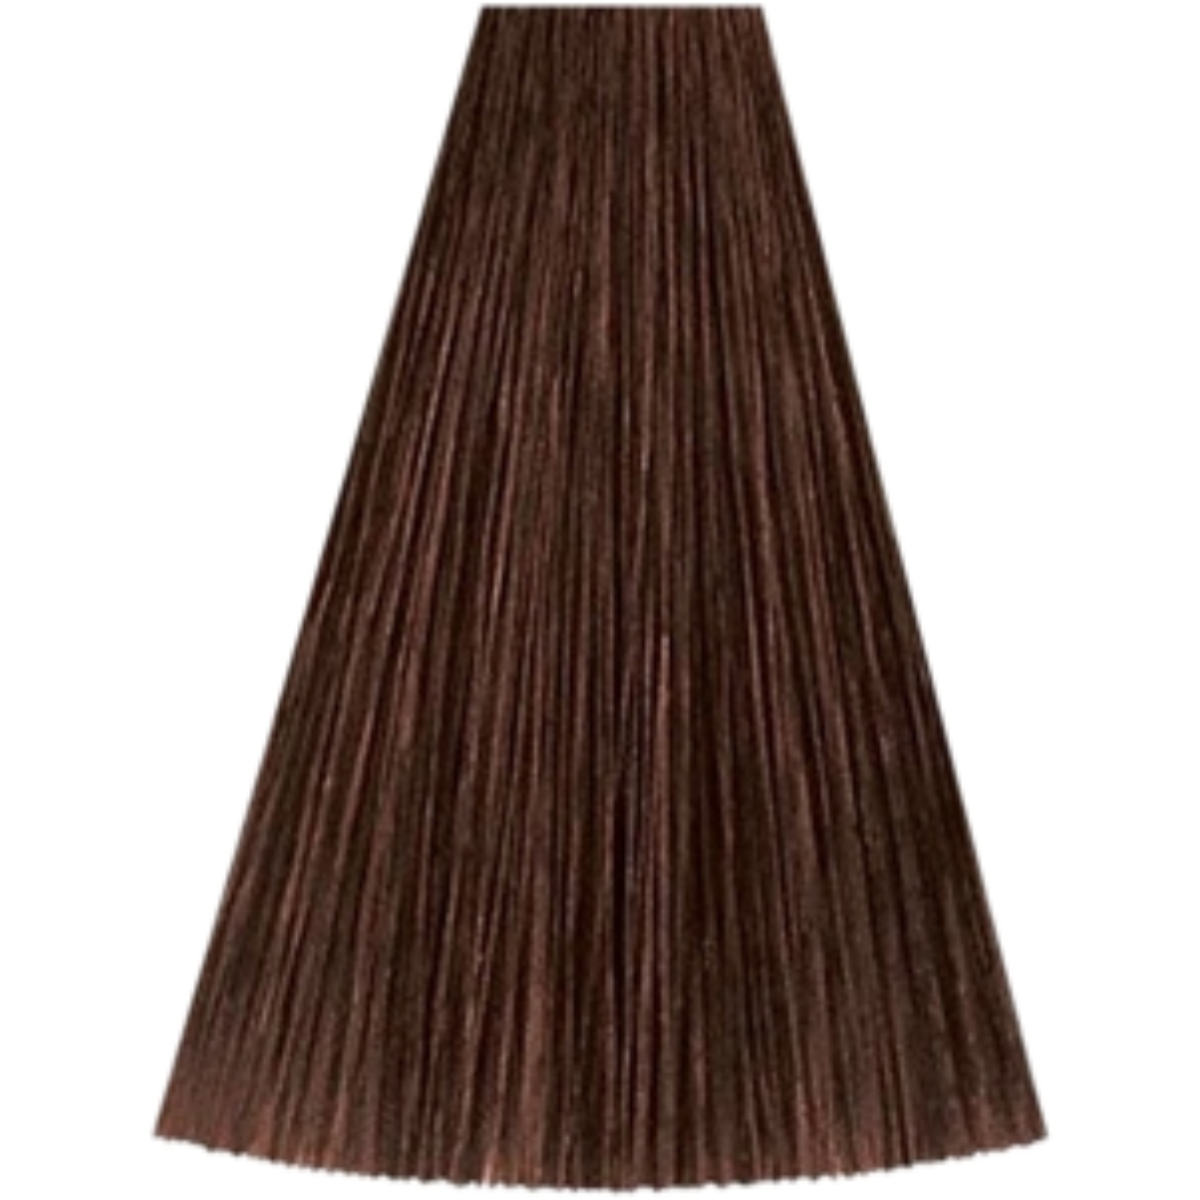 צבע שיער גוון 5/4 LIGHT BROWN RED קאדוס KADUS צבע לשיער 60 גרם